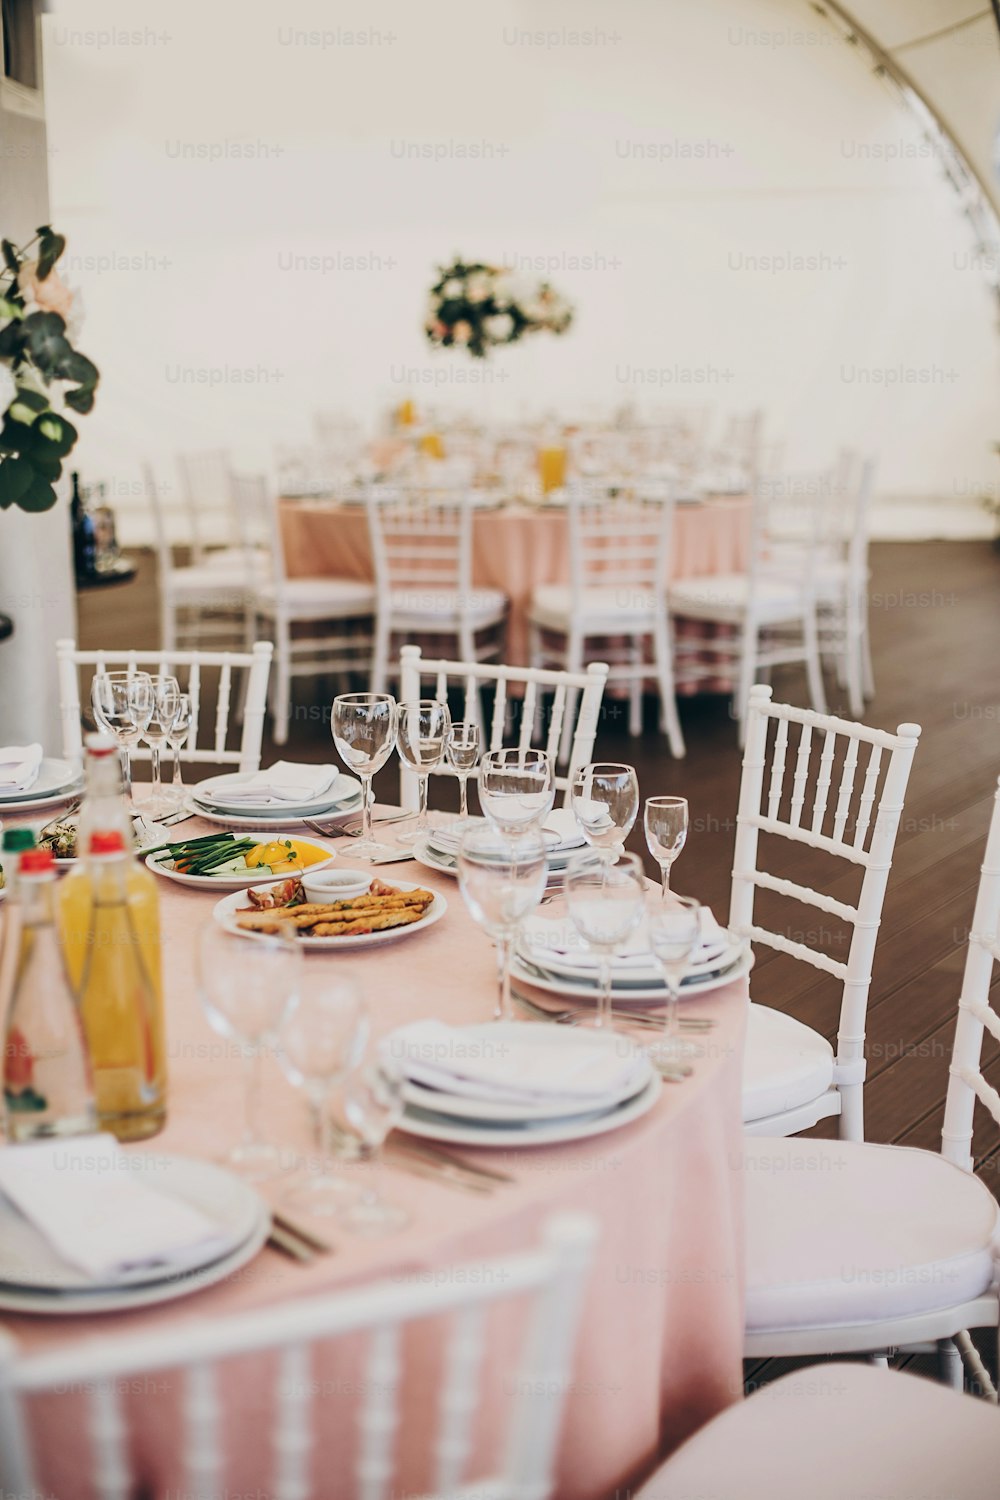 은색 칼 붙이, 와인 잔, 빈 접시, 레스토랑의 결혼식 피로연에서 분홍색 천에 맛있는 음식을 제공하는 세련된 분홍색 센터피스. 고급 케이터링